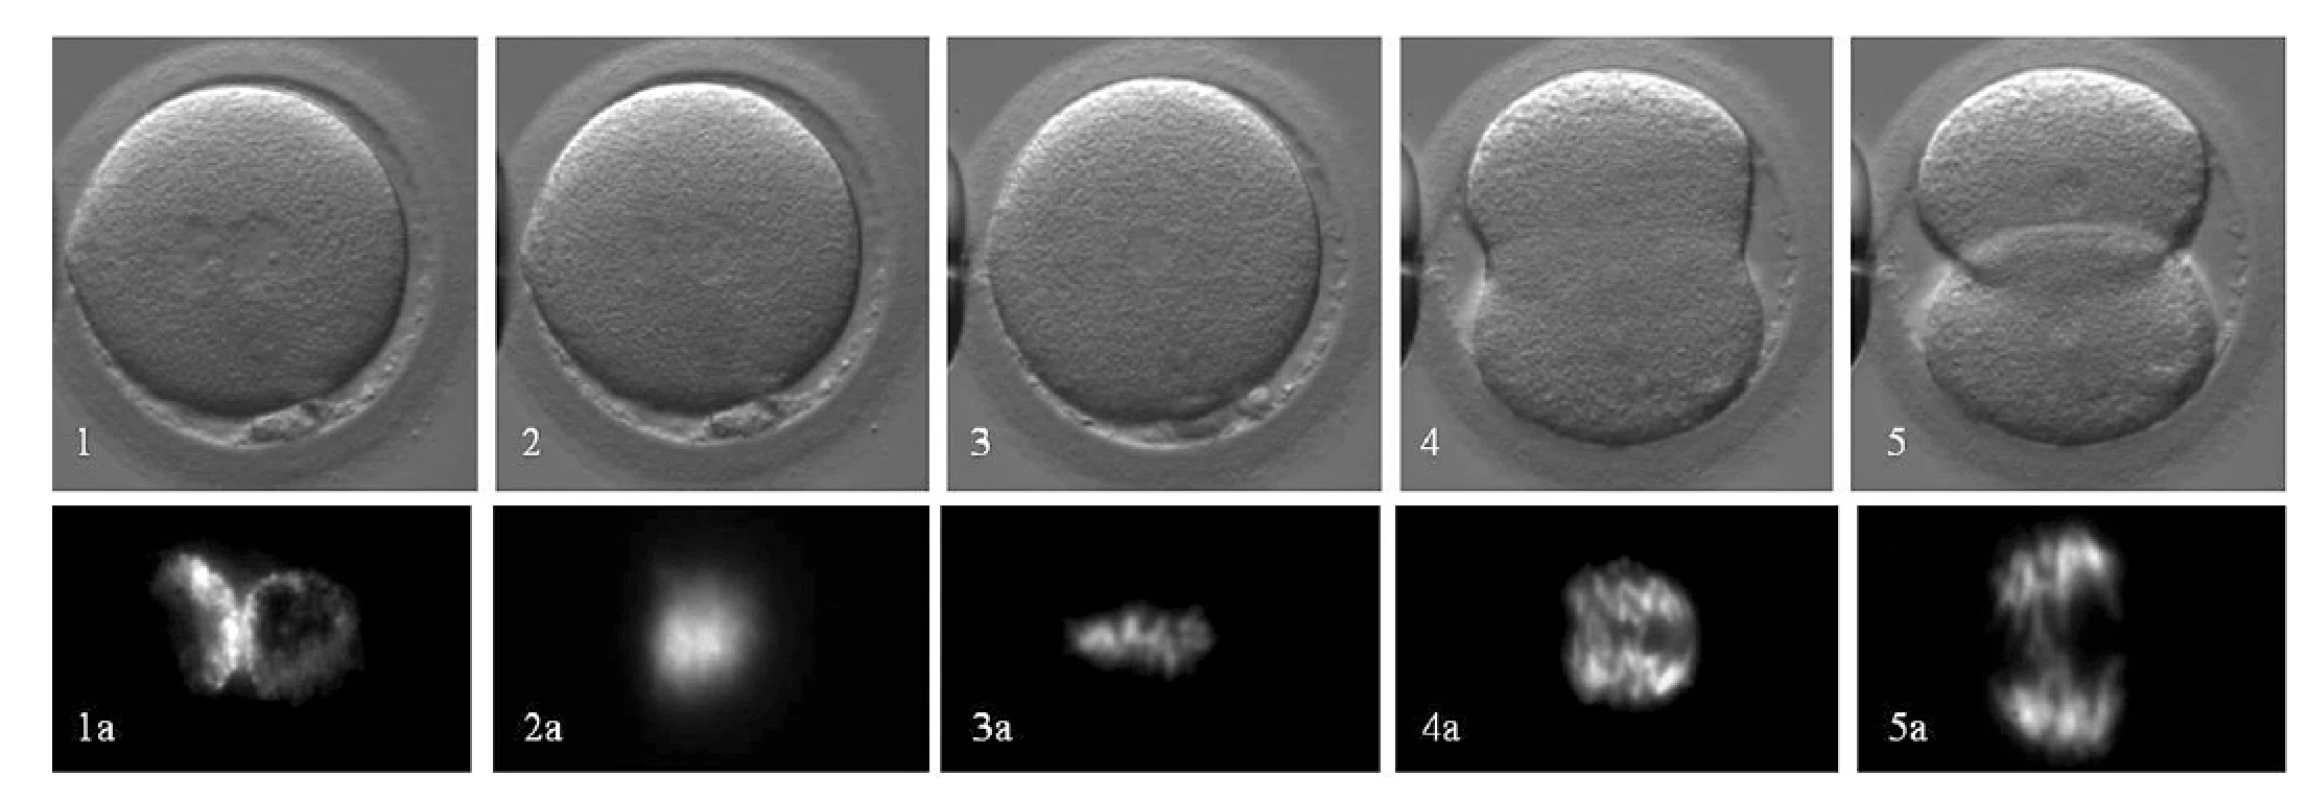 Priebeh 1. mitotického delenia embryí: Hoffman Modulation Contrast (1–5) a intravitálne farbenia chromatínu farbivom Hoechst 33342
(1a–5a). Časový priebeh: Prometafáza (1–2): vymiznutie prvojadier (tj. koniec prvej interfázy), zmiešanie maternálnych a paternálnych chromozómov a začiatok tvorby deliaceho vretienka: 20–30 min. Metafáza (3): usporiadanie kondenzovaných chromozómov v equatoriálnej rovine a plné vyvinutie bipolárneho deliaceho vretienka: 120–140 min. Anafáza (4), Telofáza (5): segregácia chromozómov do dcérskych buniek: 20–30min. Následne obe bunky vstupujú do druhej interfázy. Autor obrázkov D. Hlinka